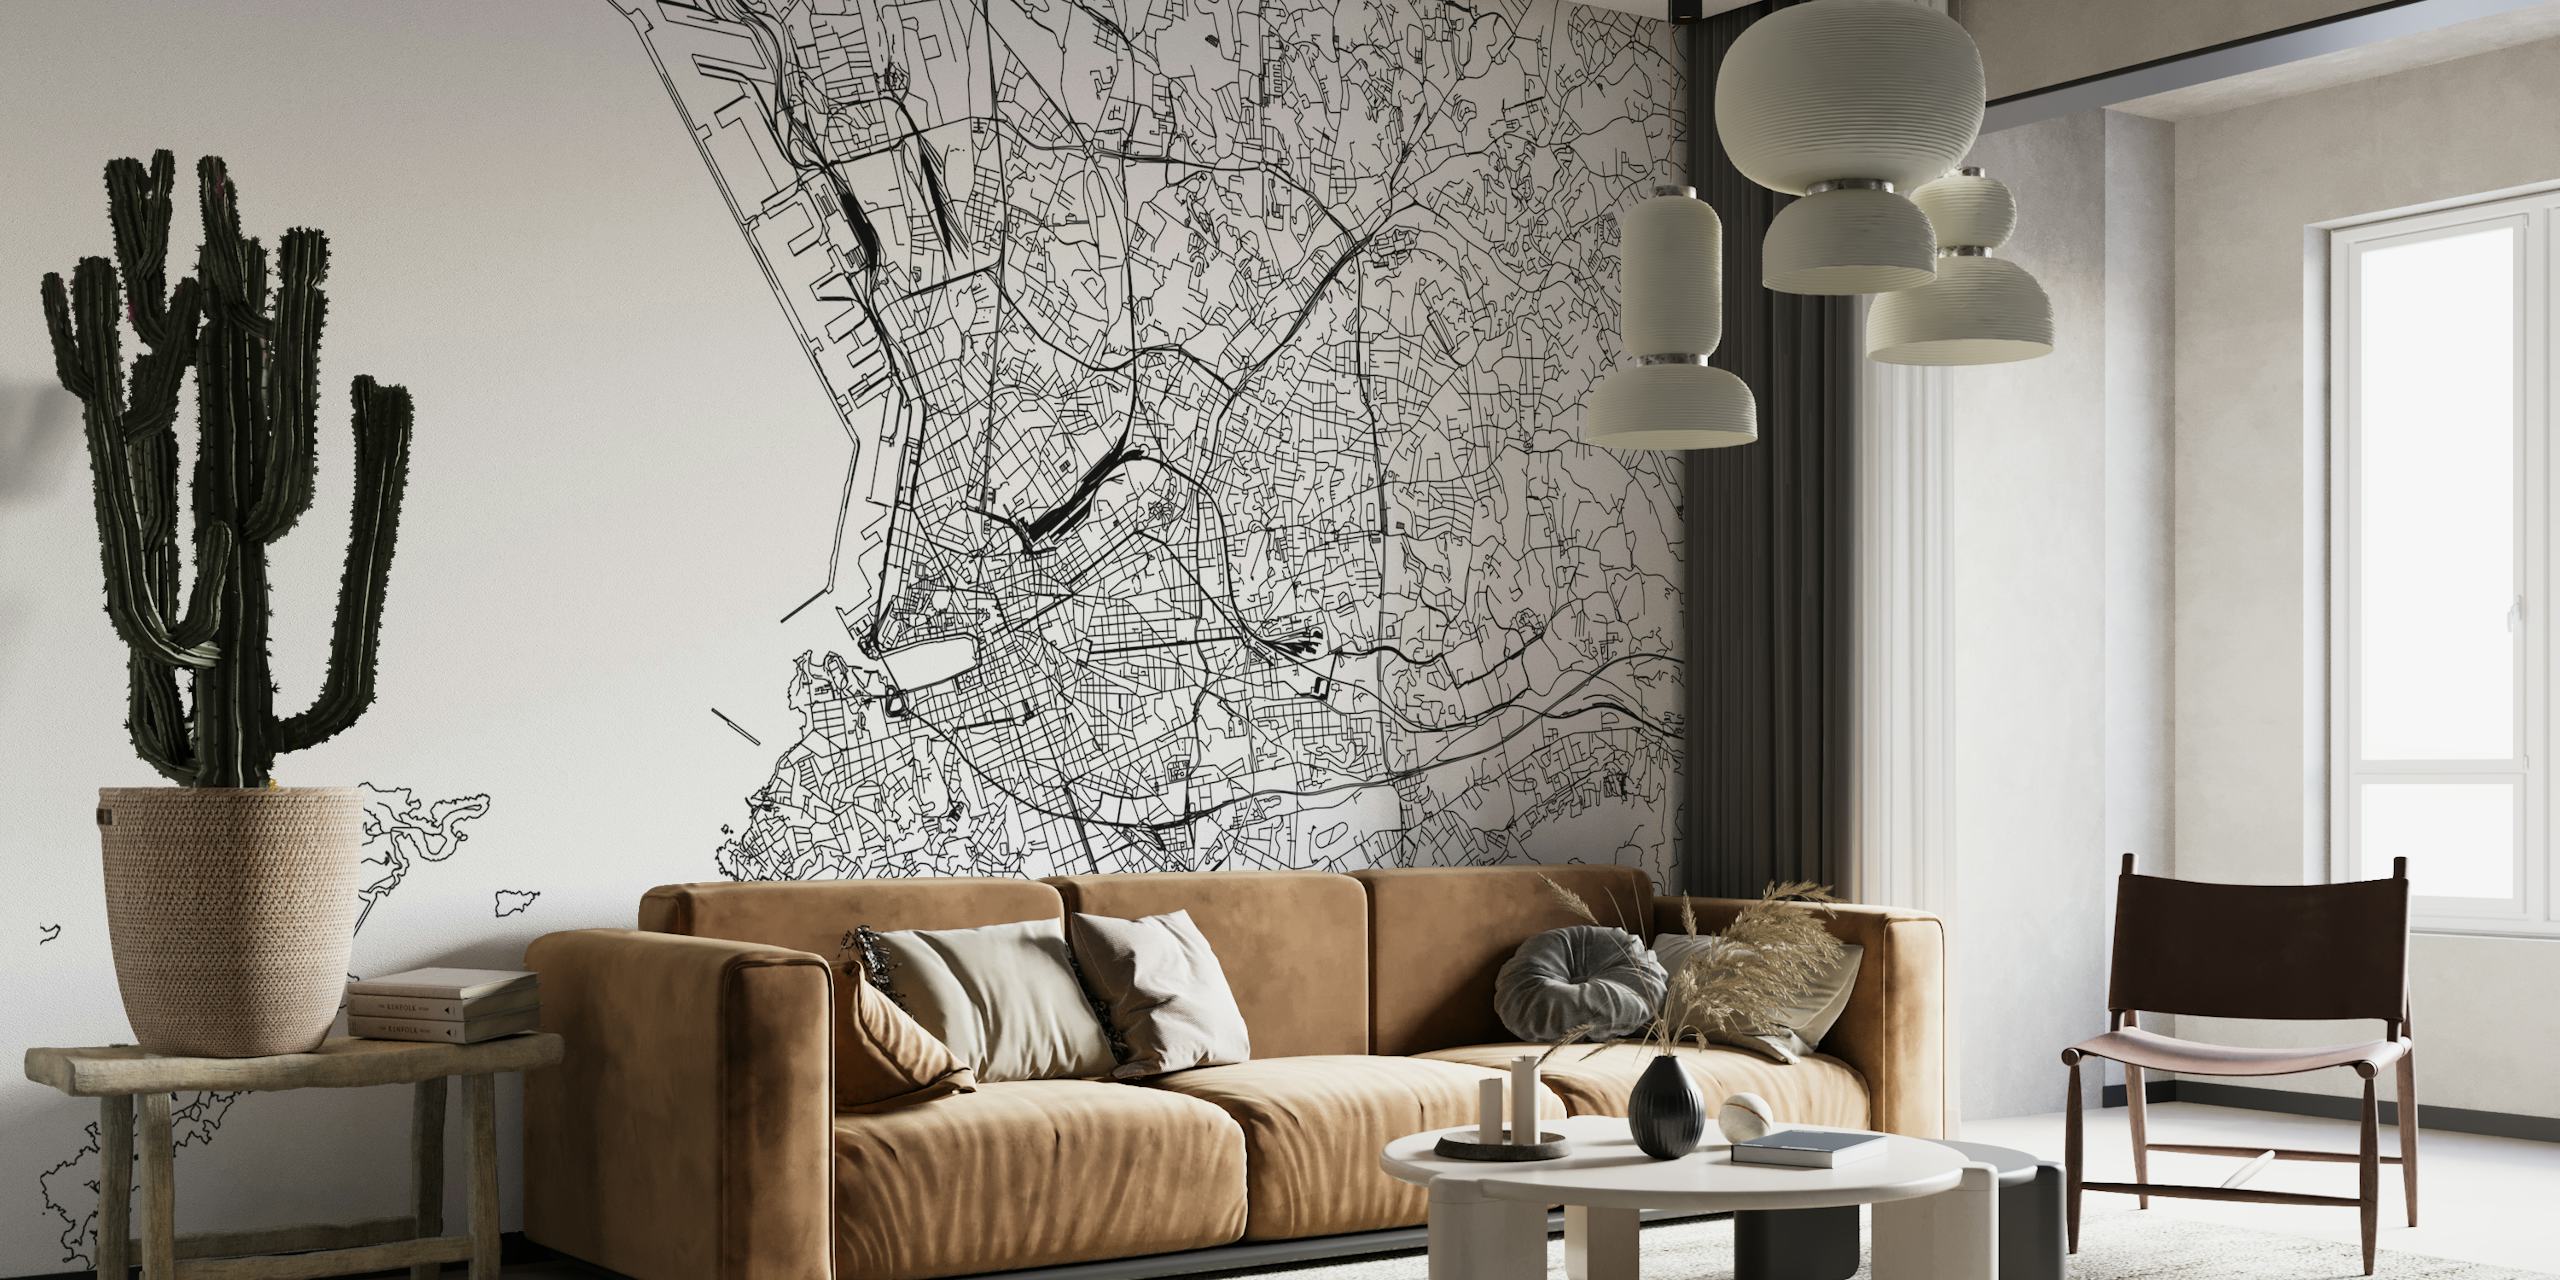 Schwarz-weiße Fototapete mit detaillierter Karte von Marseille für die Inneneinrichtung.